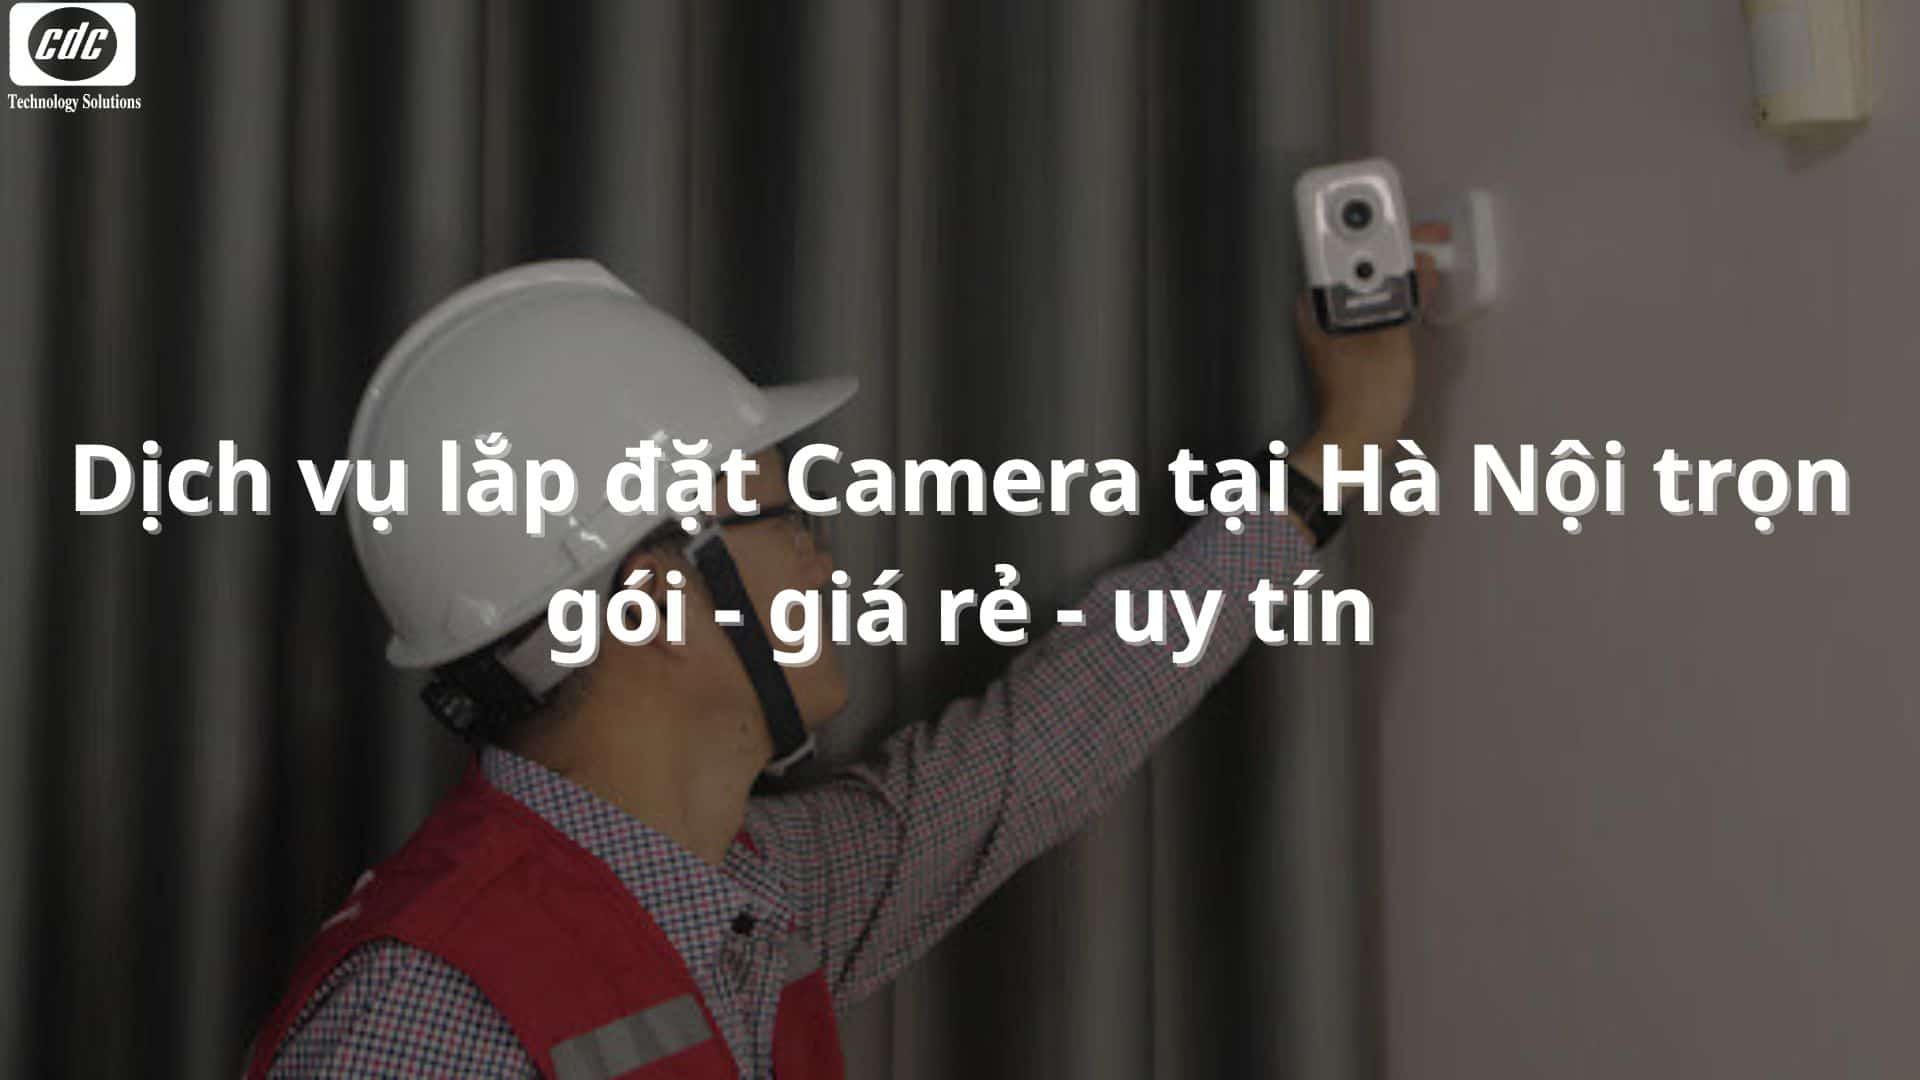 Dịch vụ lắp đặt Camera tại Hà Nội trọn gói - giá rẻ - uy tín